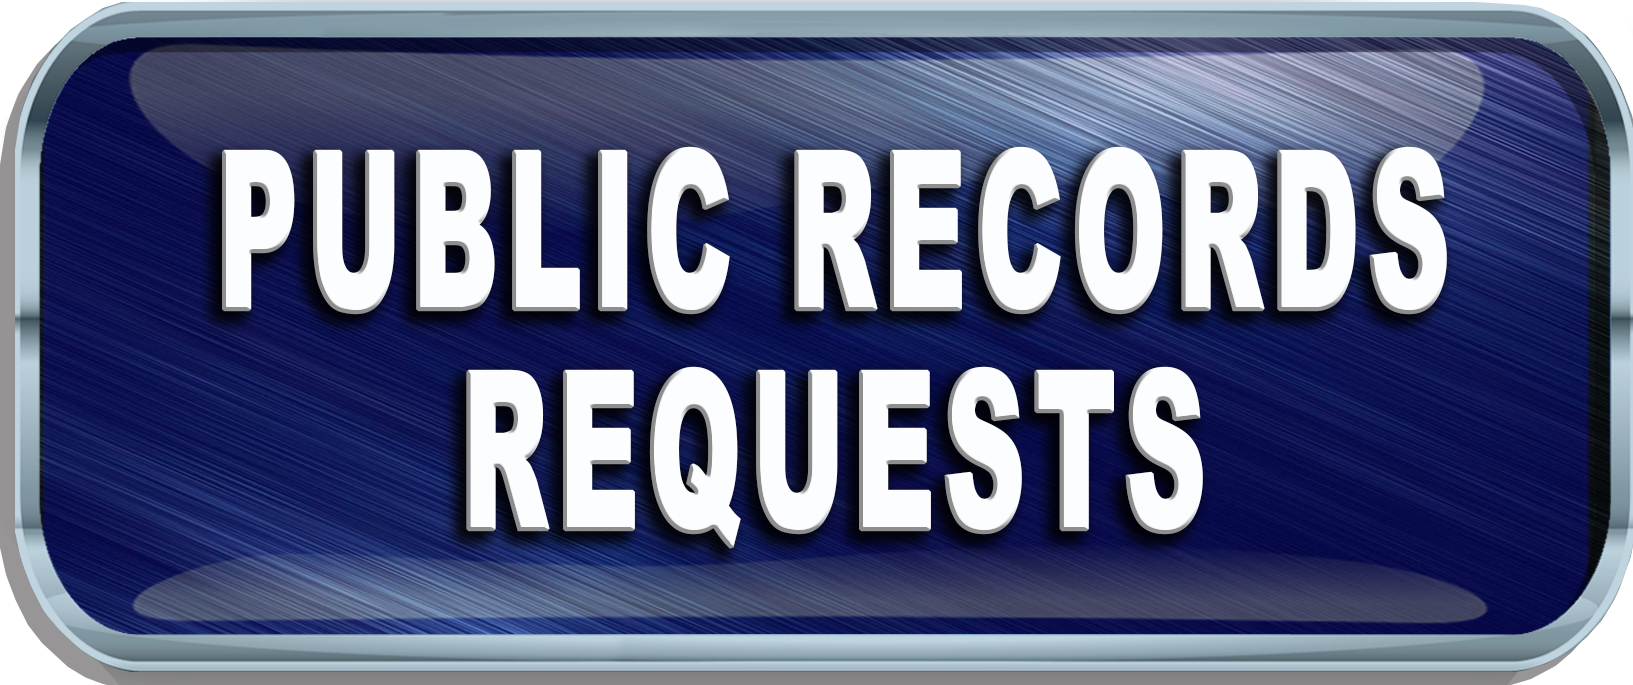 Public Record Request